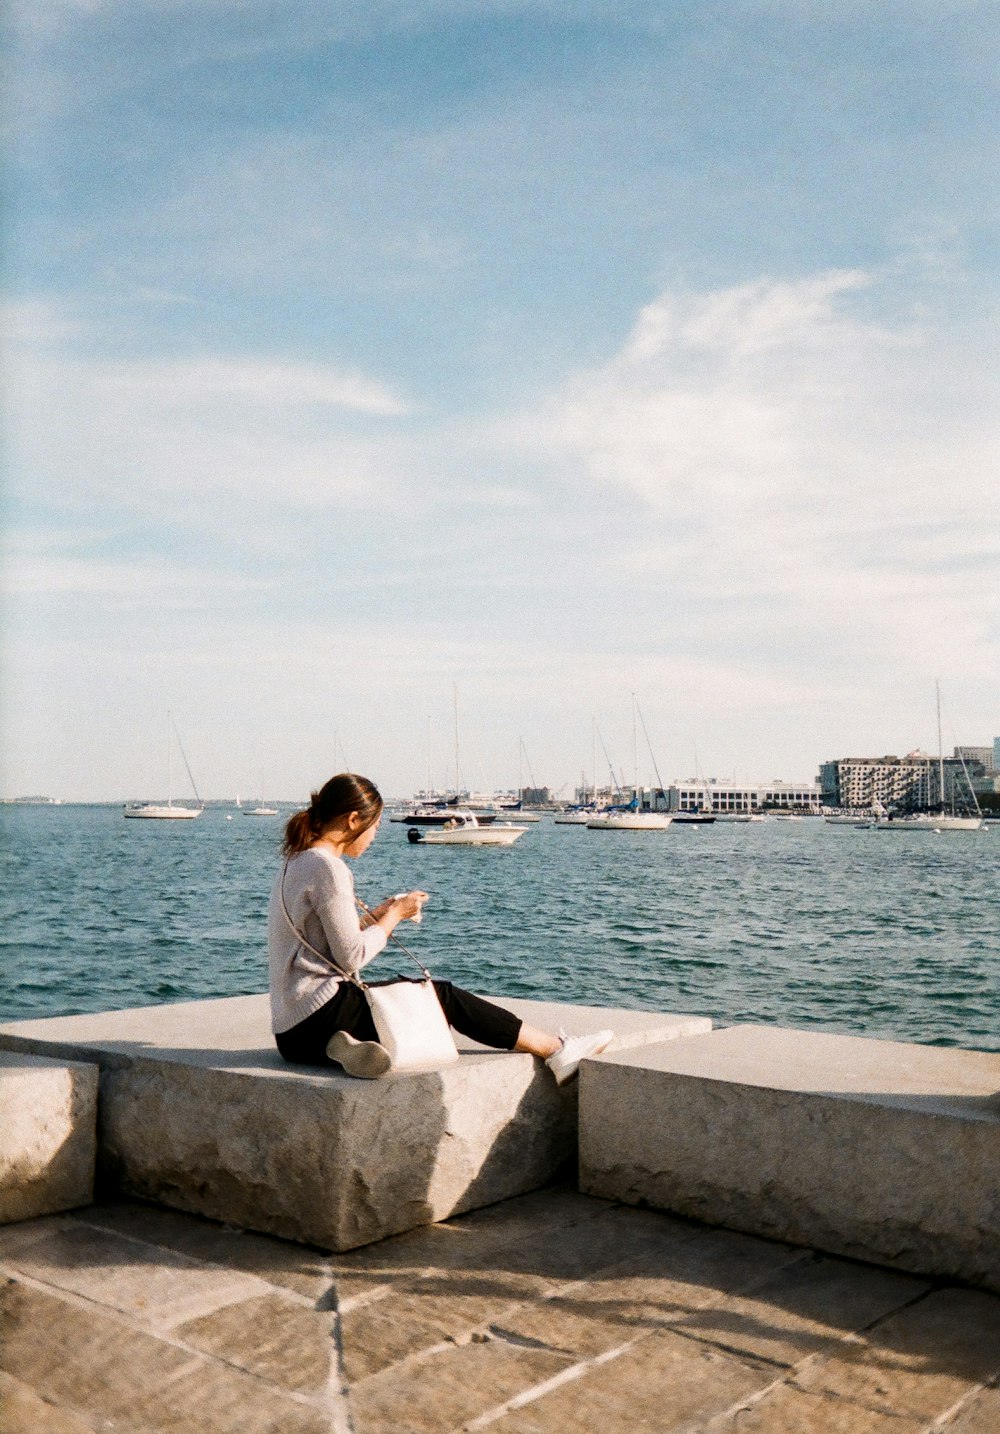 Una mujer sentada en una repisa mirando su teléfono celular